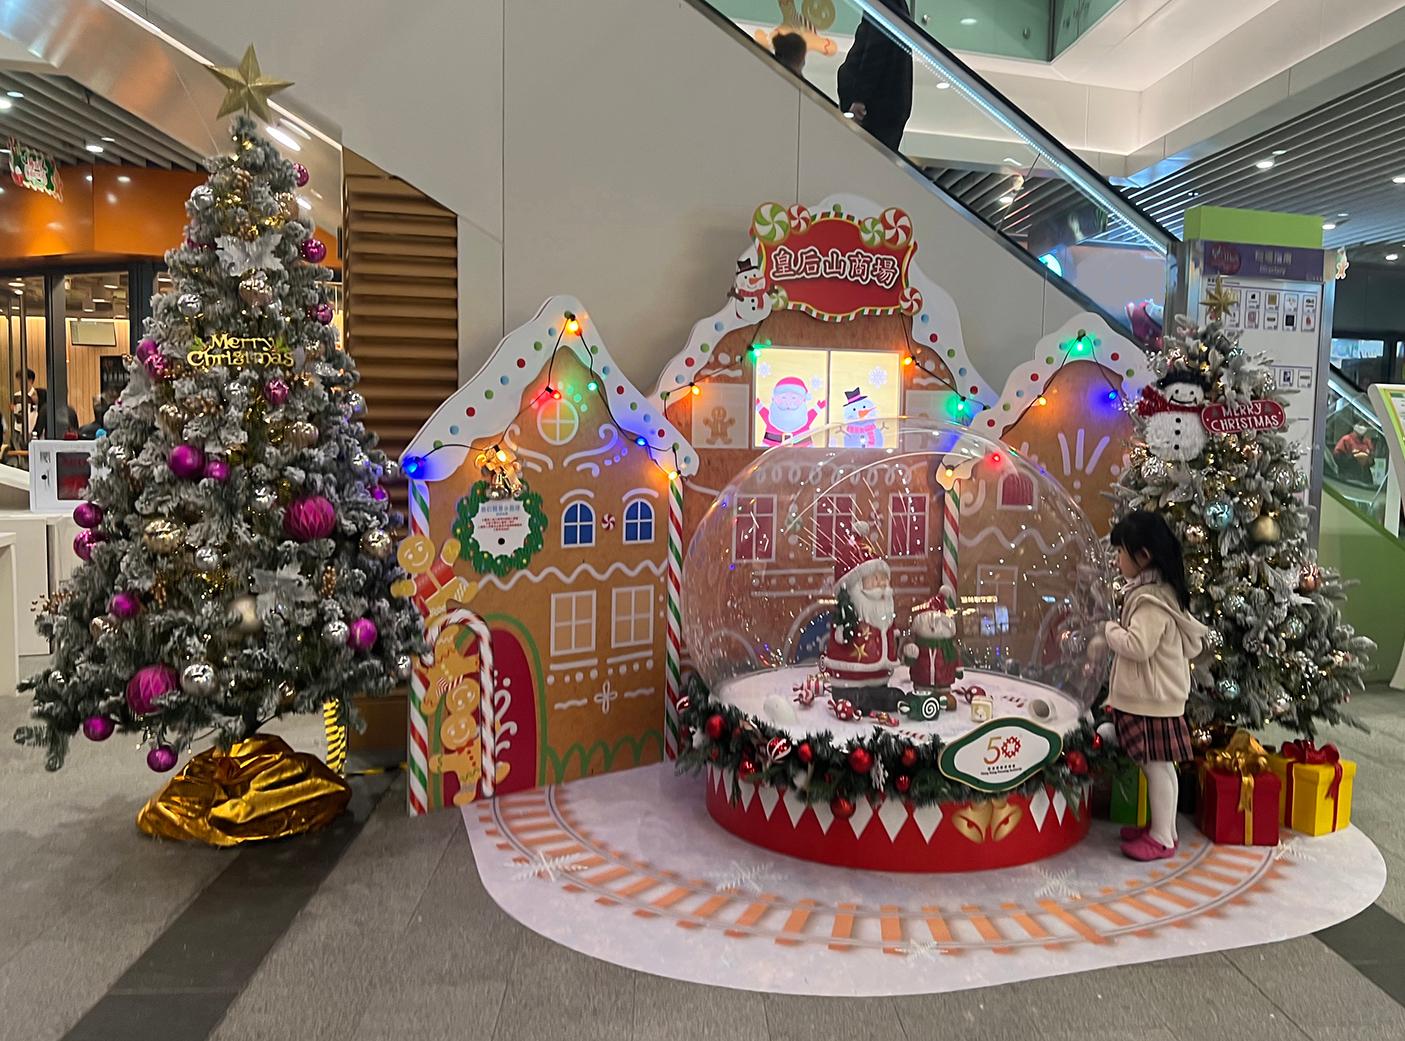 香港房屋委員會（房委會）於轄下多個商場舉辦聖誕節推廣及夜繽紛活動，與市民歡度聖誕。圖示房委會粉嶺皇后山商場的聖誕裝飾。